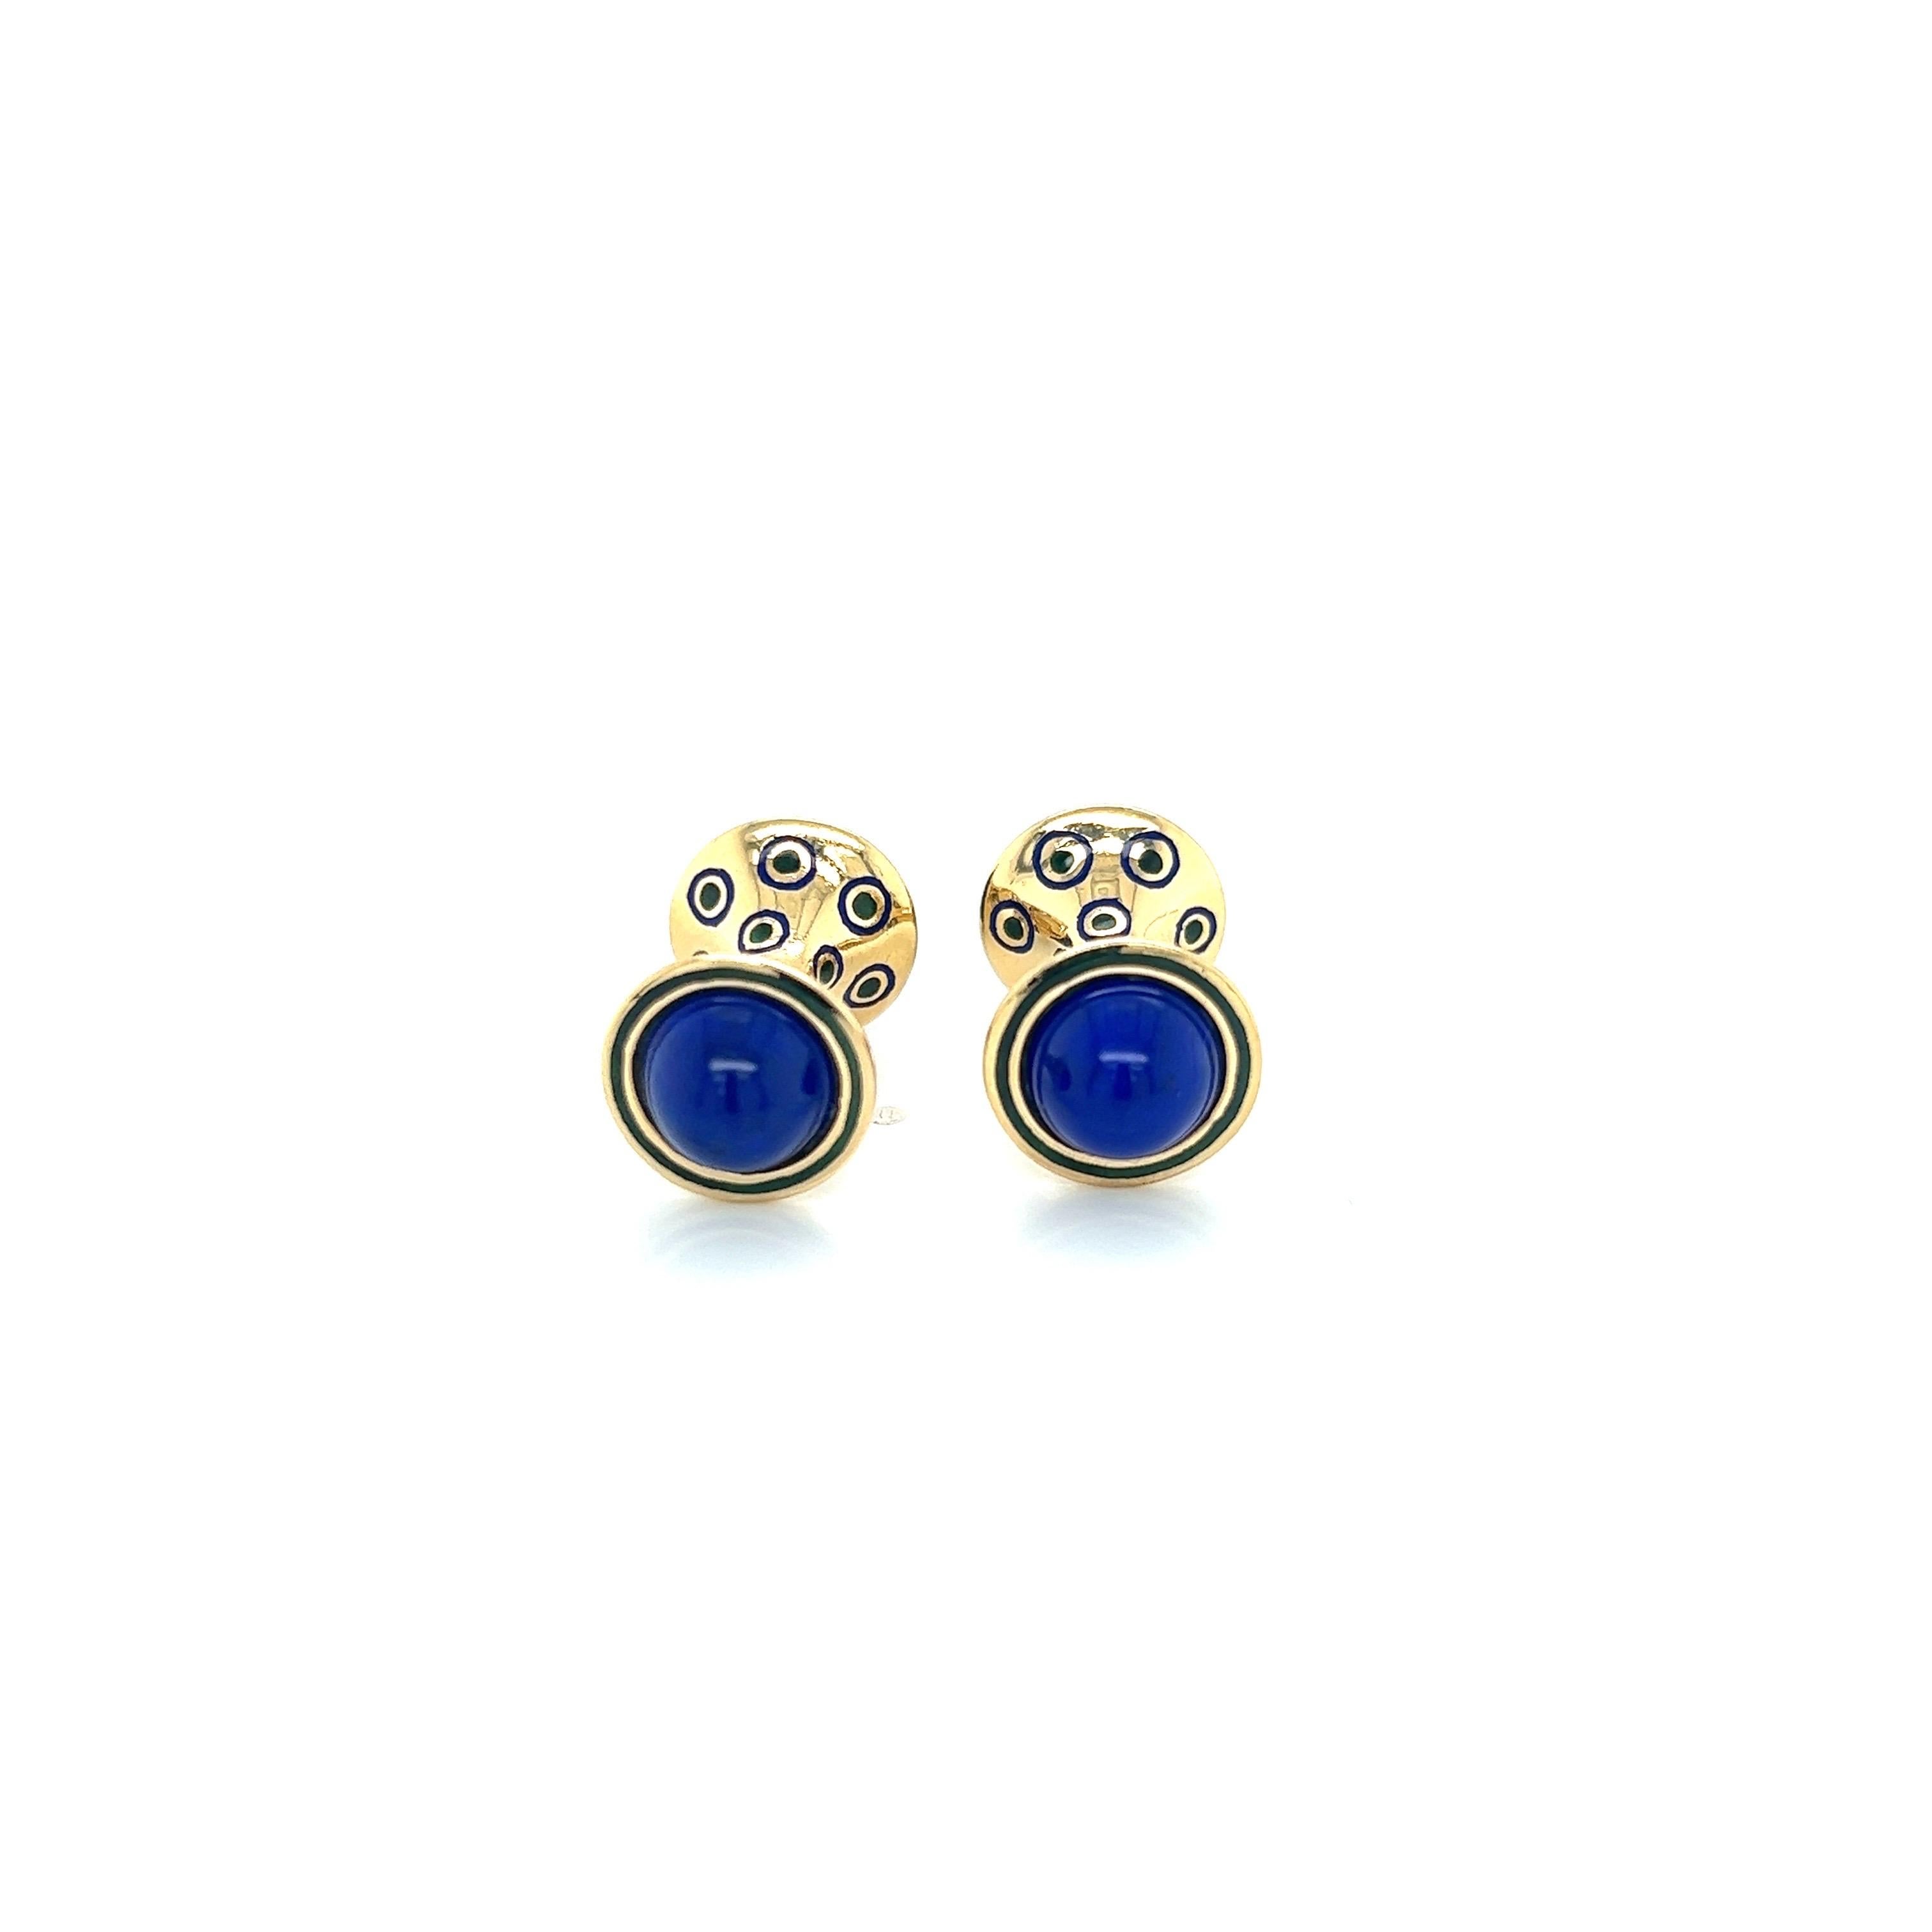 Les boutons de manchette en or jaune 18 carats en lapis-lazuli cabochon et émail bleu et vert sont un accessoire élégant et sophistiqué pour toute occasion formelle ou semi-formelle. L'or jaune 18 carats, riche et chaud, donne le ton à la pièce. Le